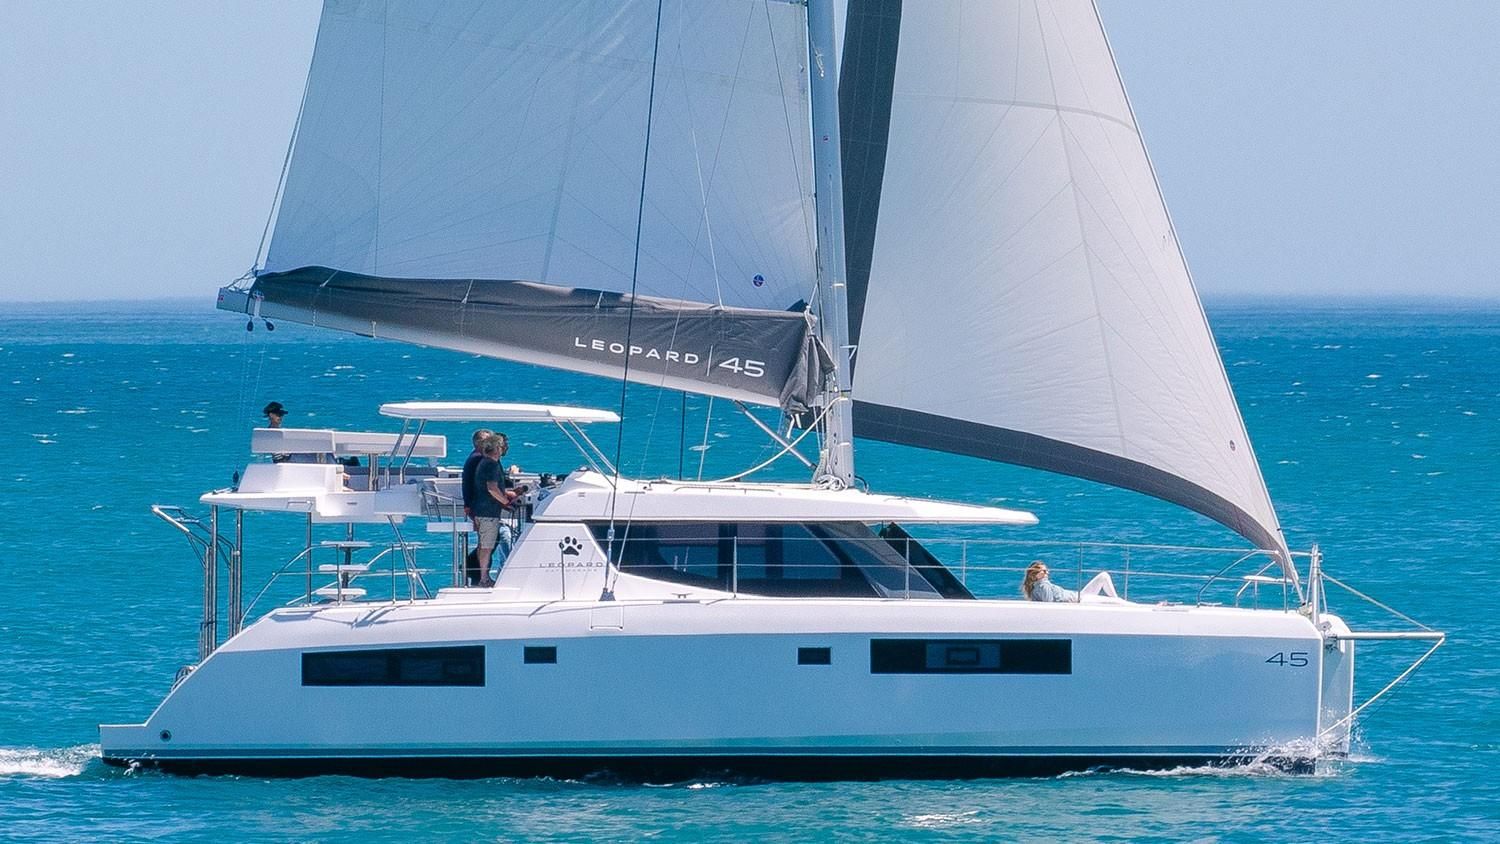 yachtworld leopard catamaran